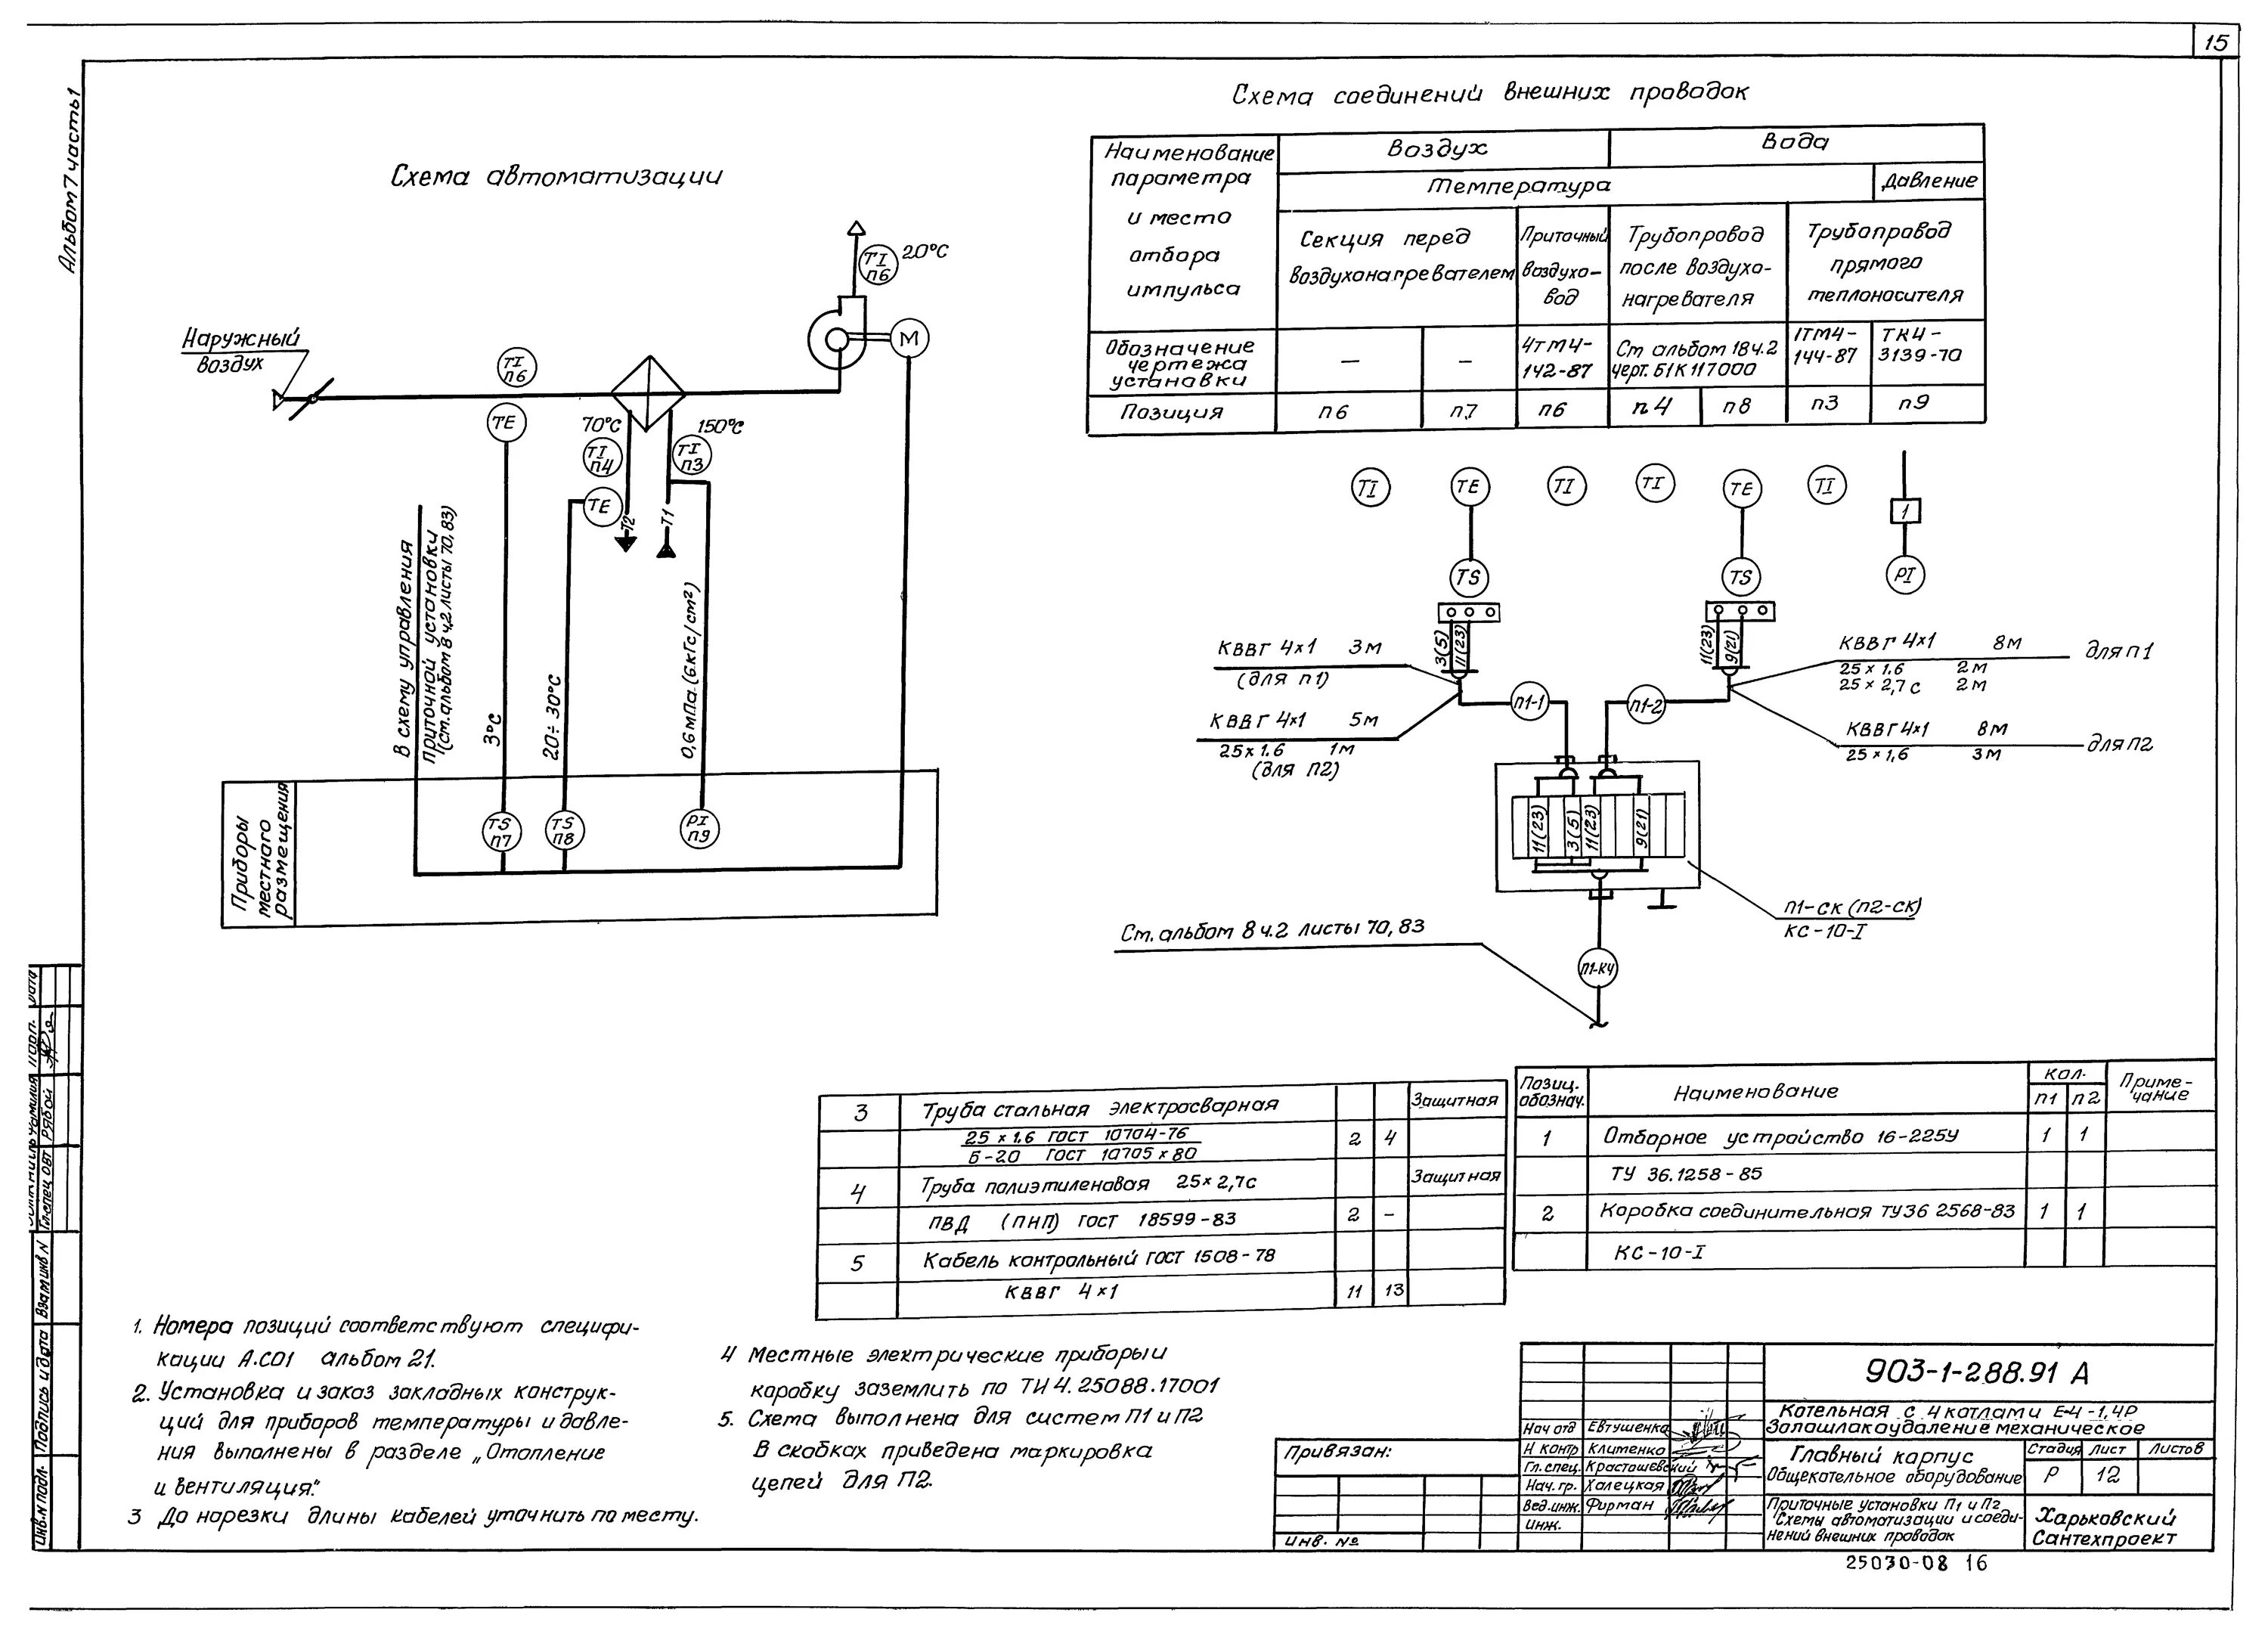 Схемы соединения и подключения. Схема внешних электрических проводок. Схема внешних кабельных соединений. Схема внешних трубных проводок. Схема соединений и подключений внешних проводок.